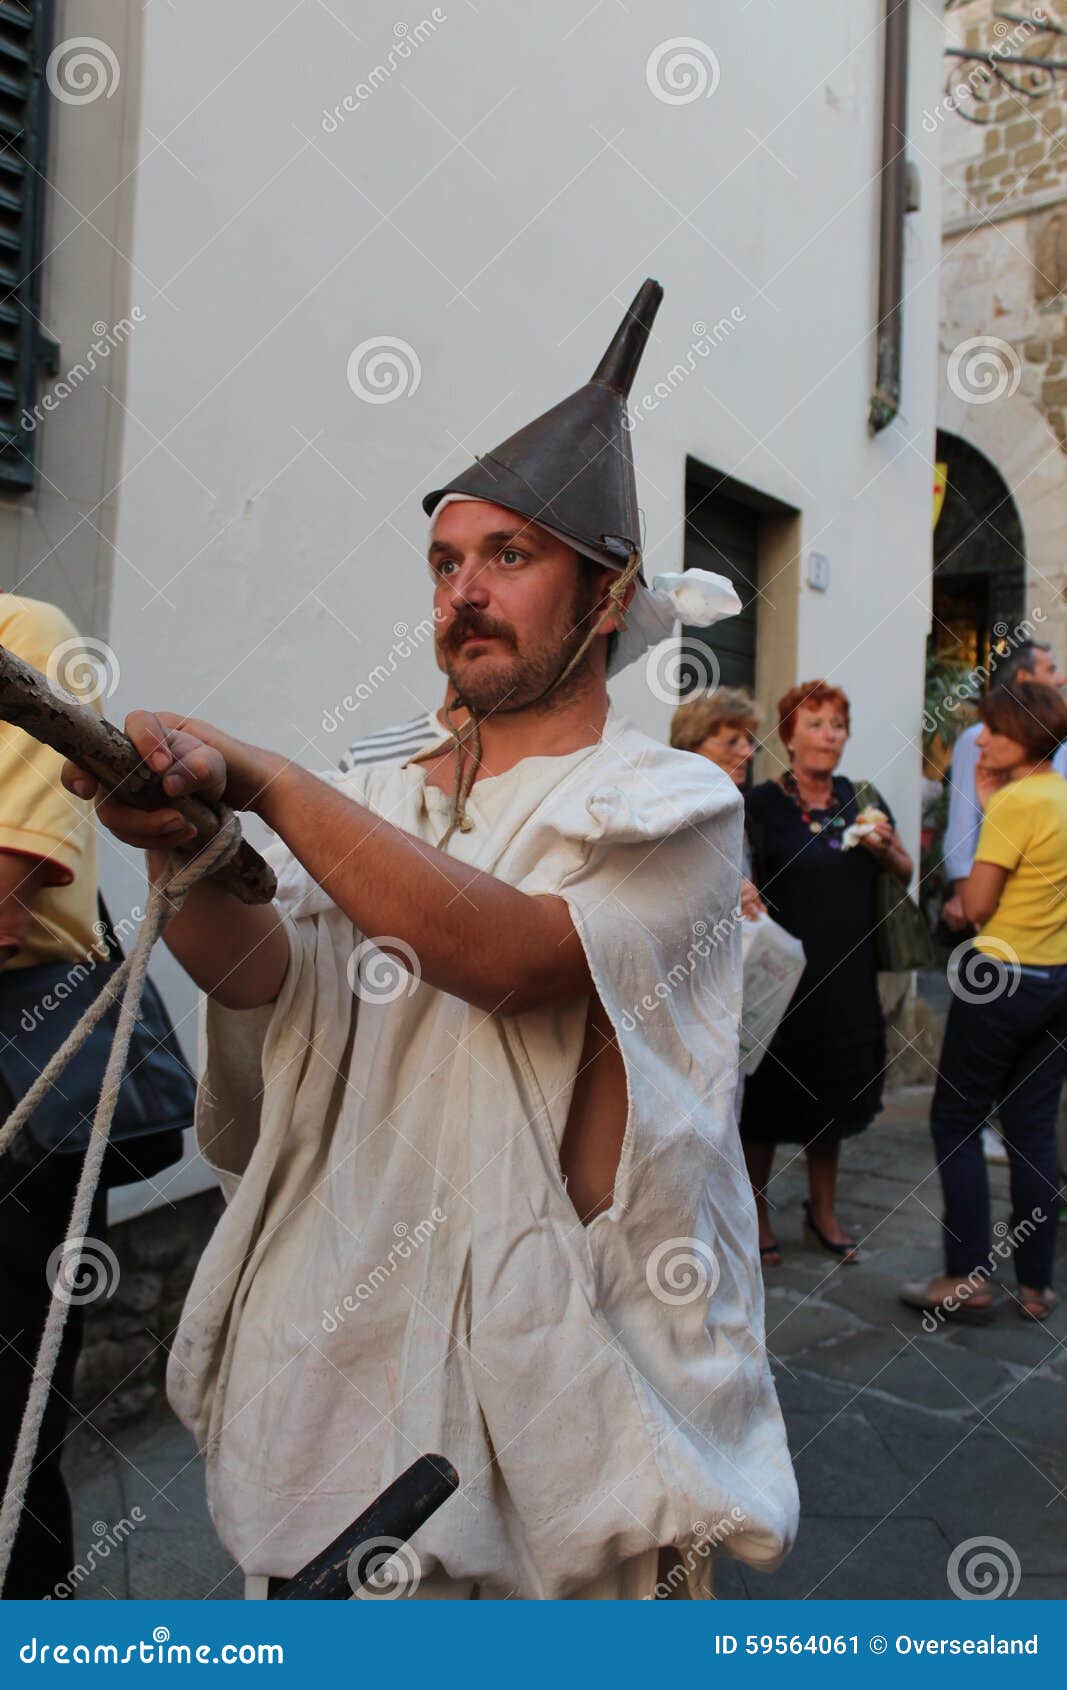 Actores De La Calle El Tonto Foto Imagen de medieval, pista: 59564061